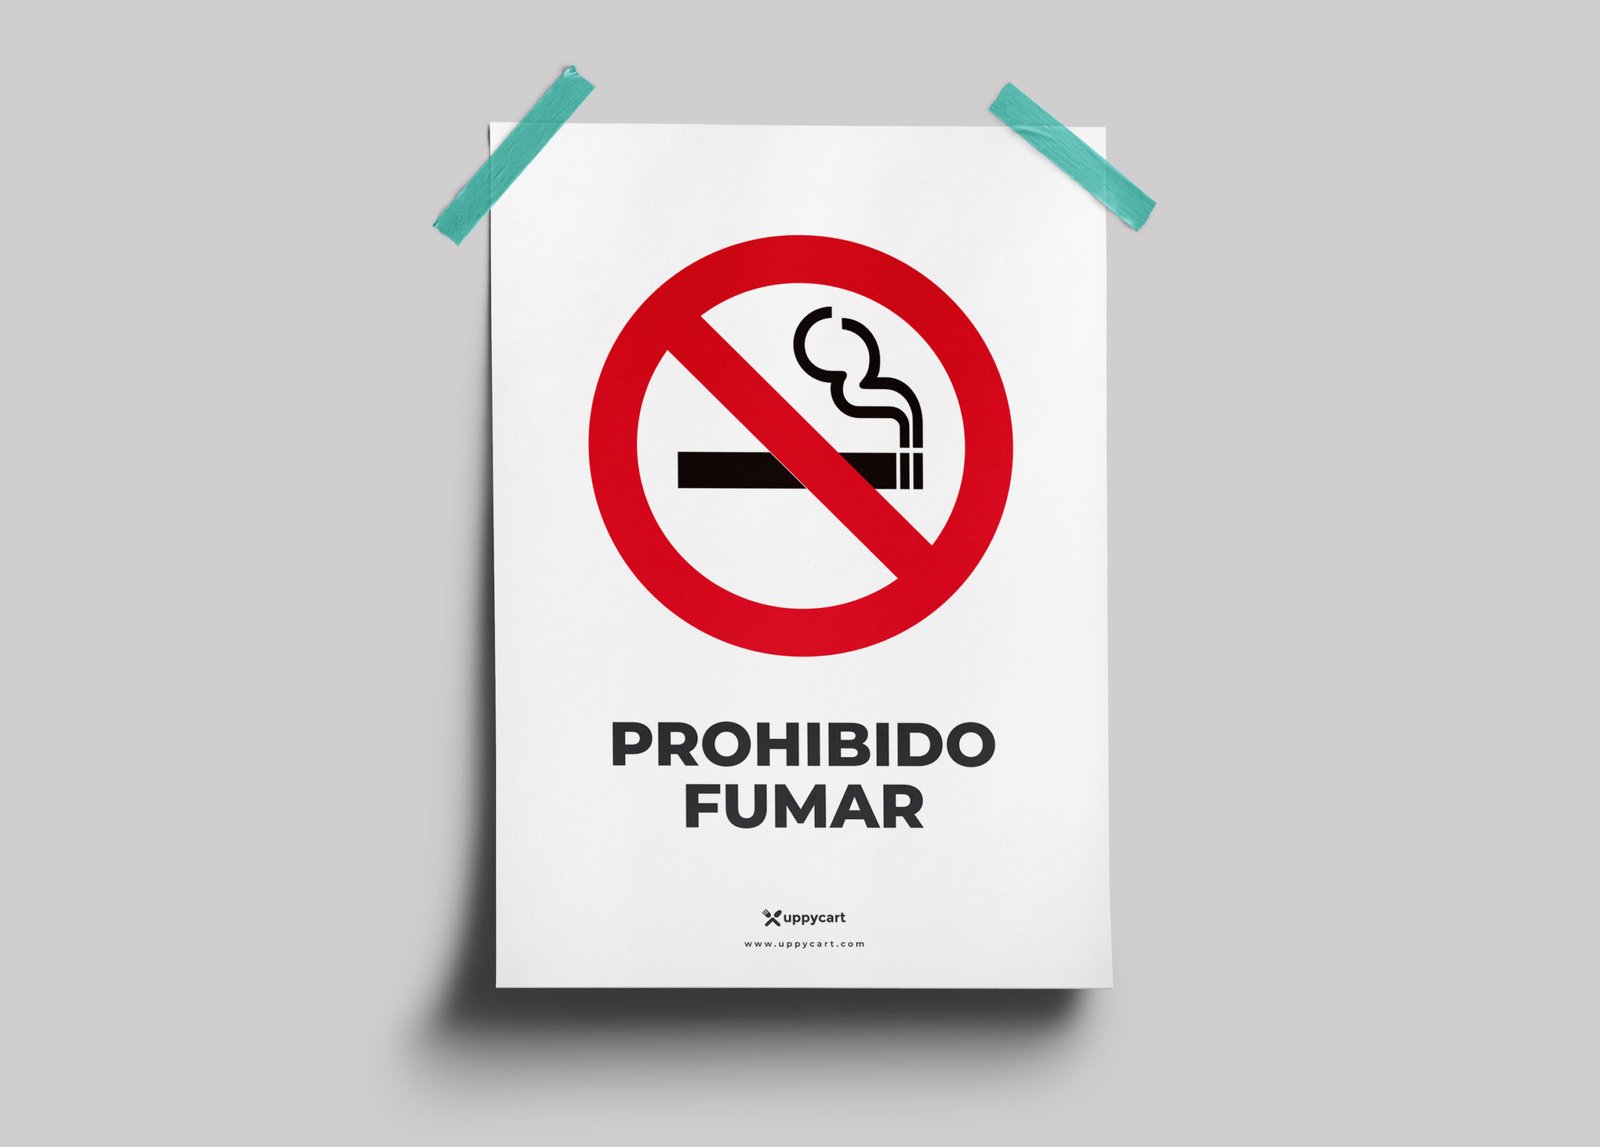 Prohibido Fumar – Impresionart Express